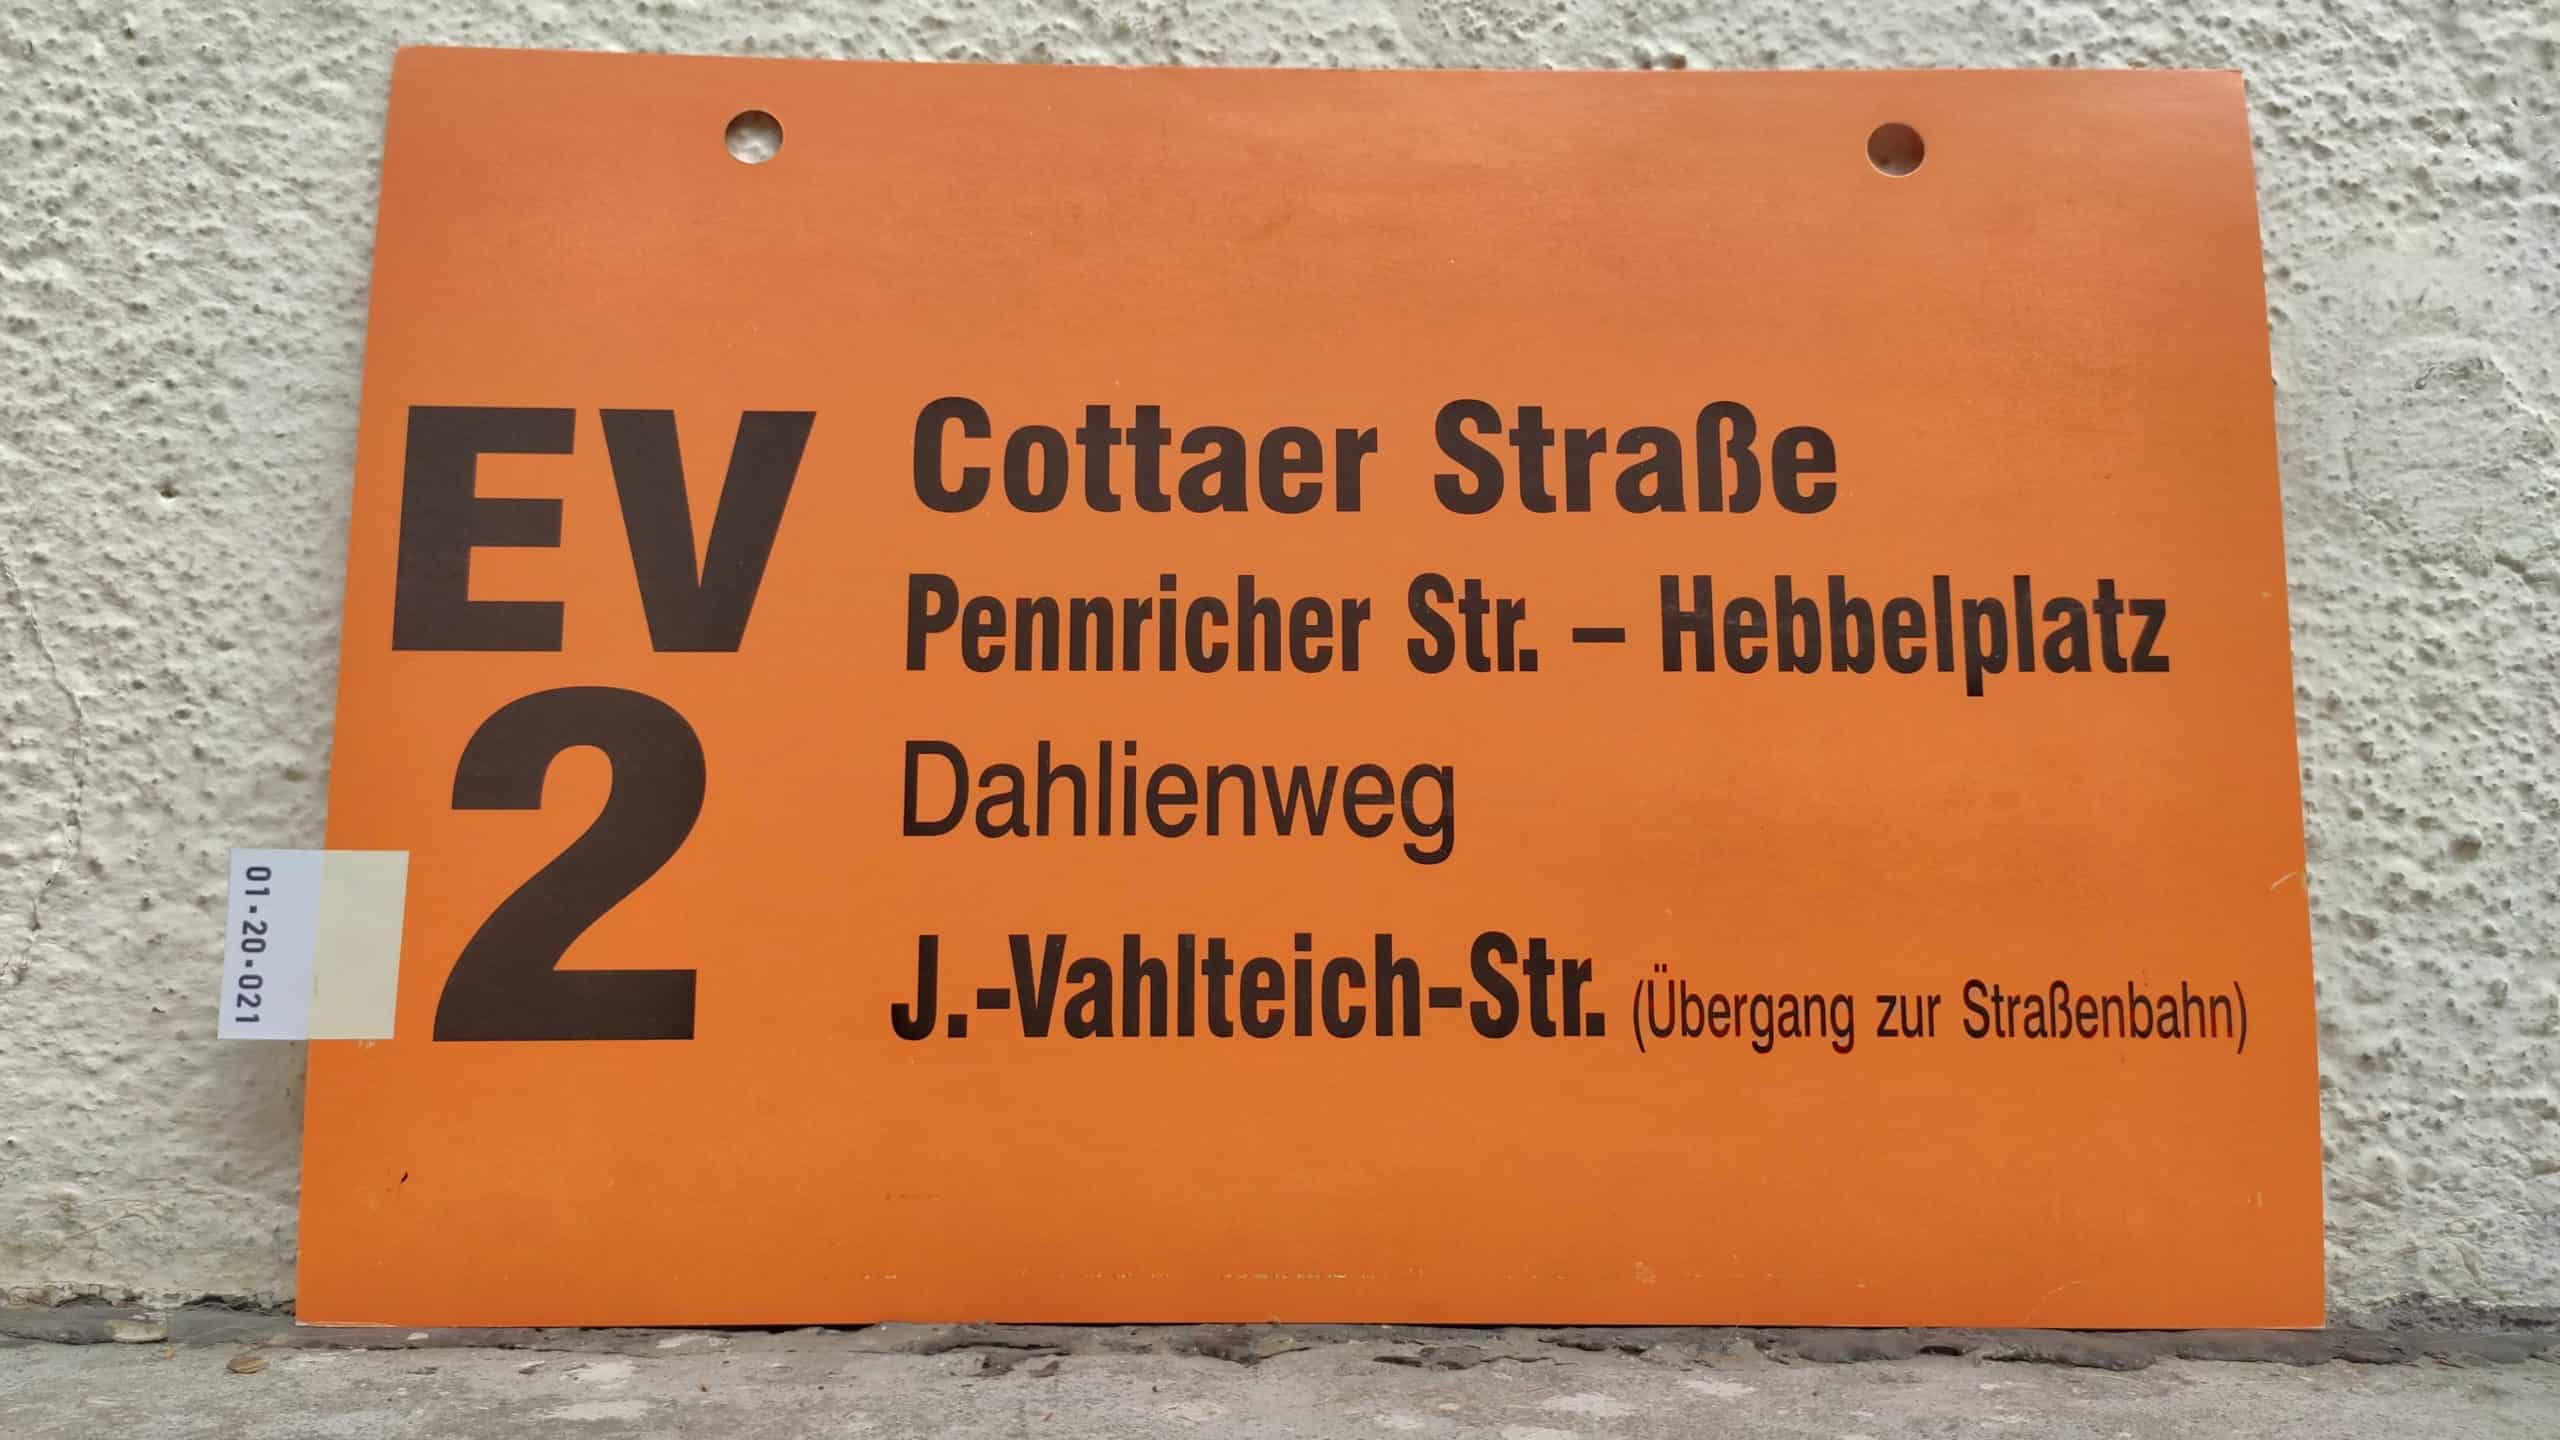 EV 2 Cottaer Straße – J.-Vahlteich-Str. (Übergang zur Straßenbahn)